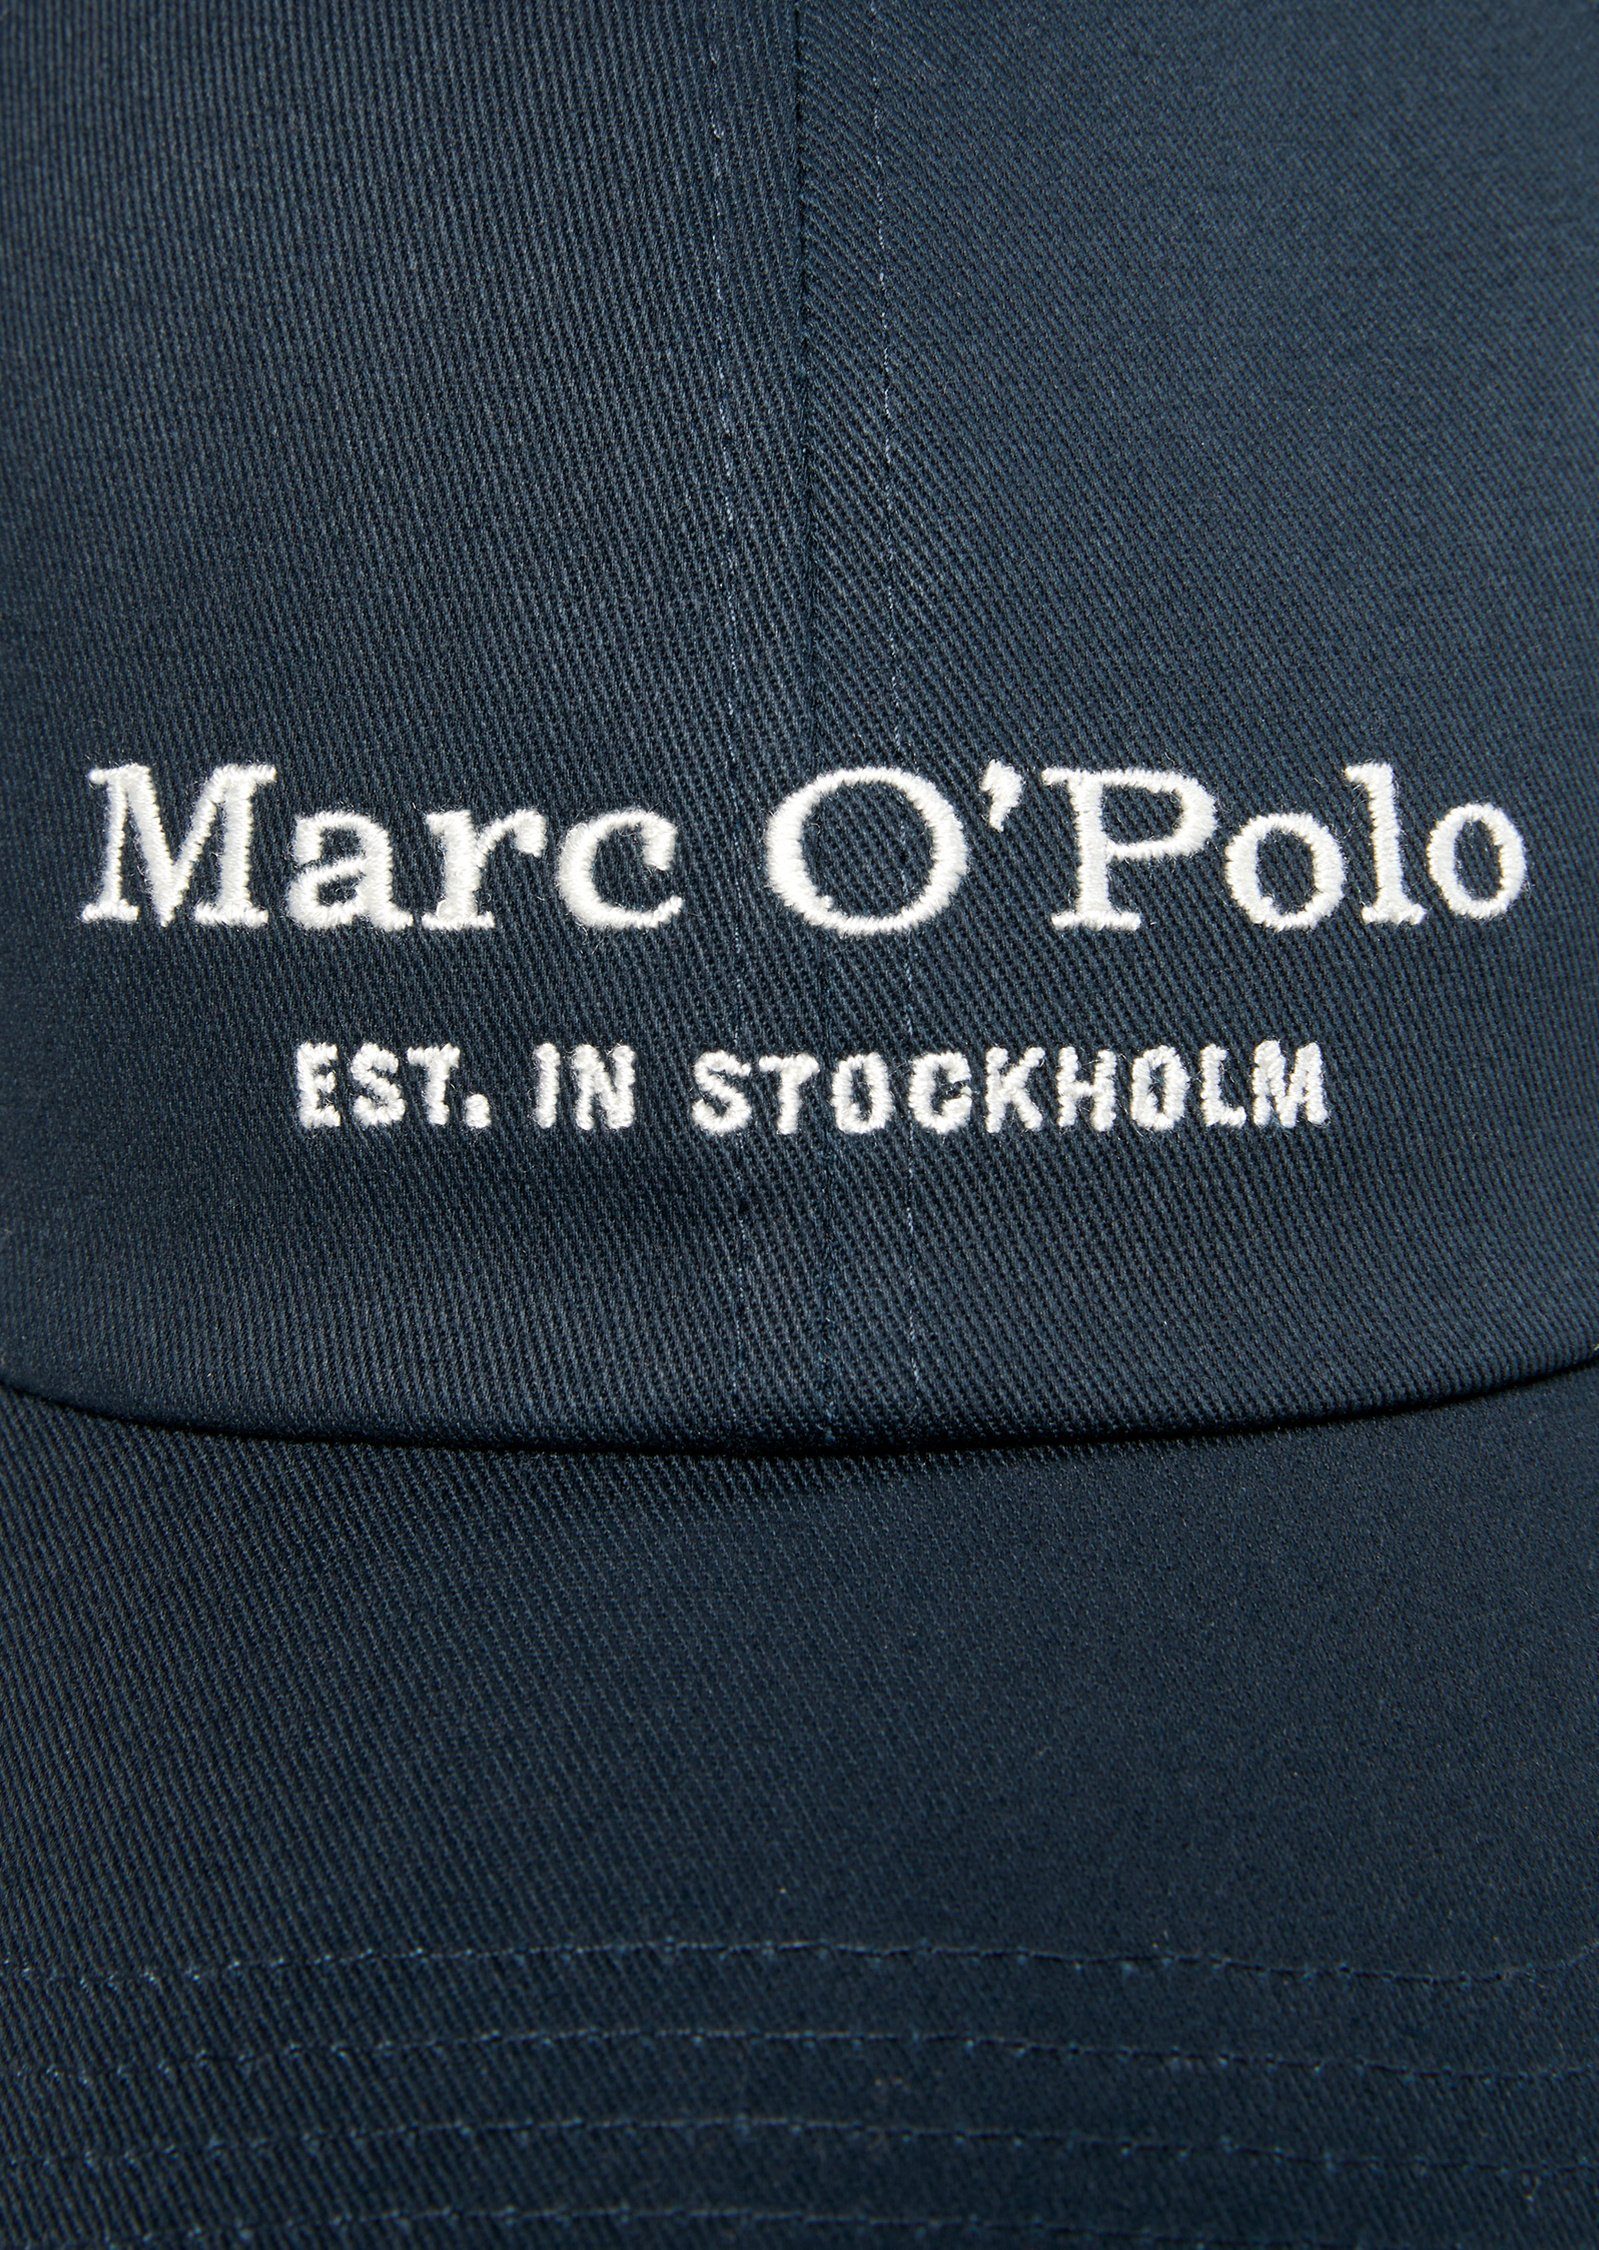 Marc dunkelblau Baseball O'Polo aus hochwertigem Cap Organic-Twill